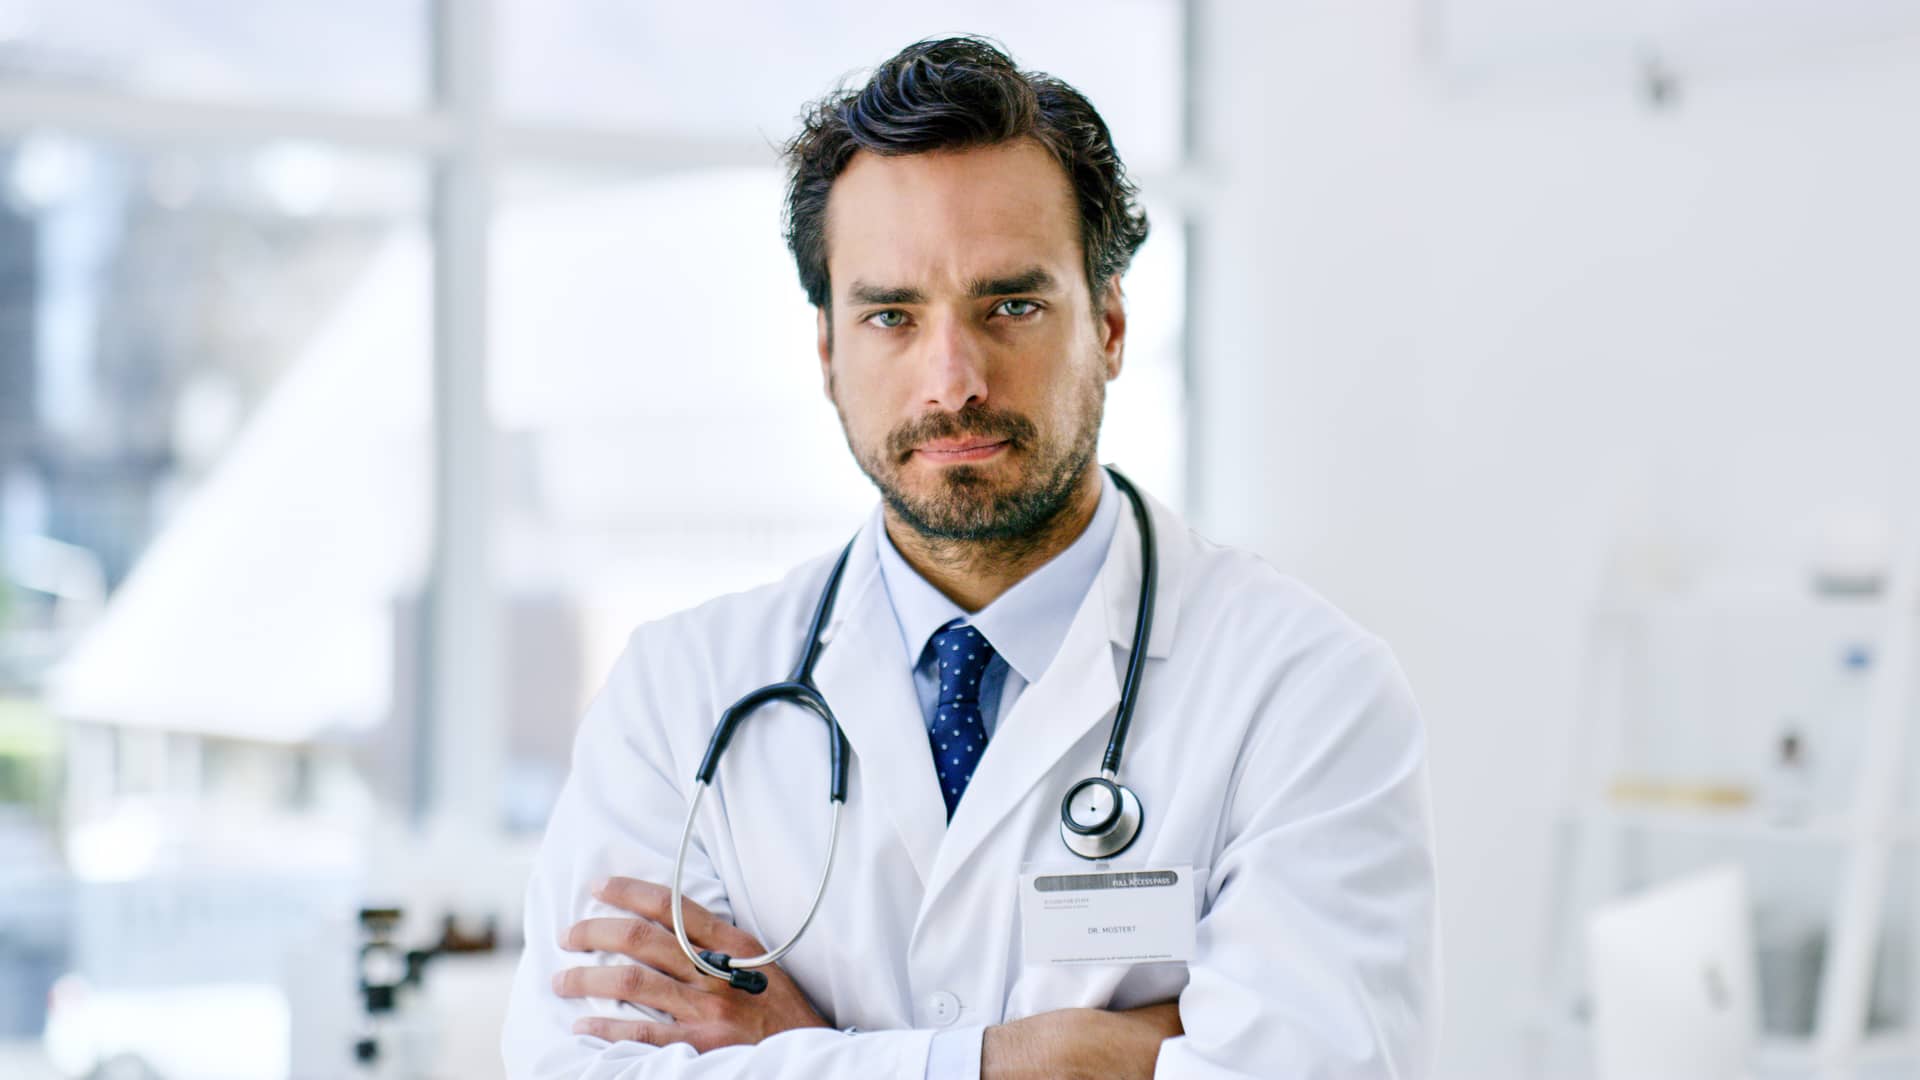 Médico de seguro médico de sanitas esperando a pasar consulta